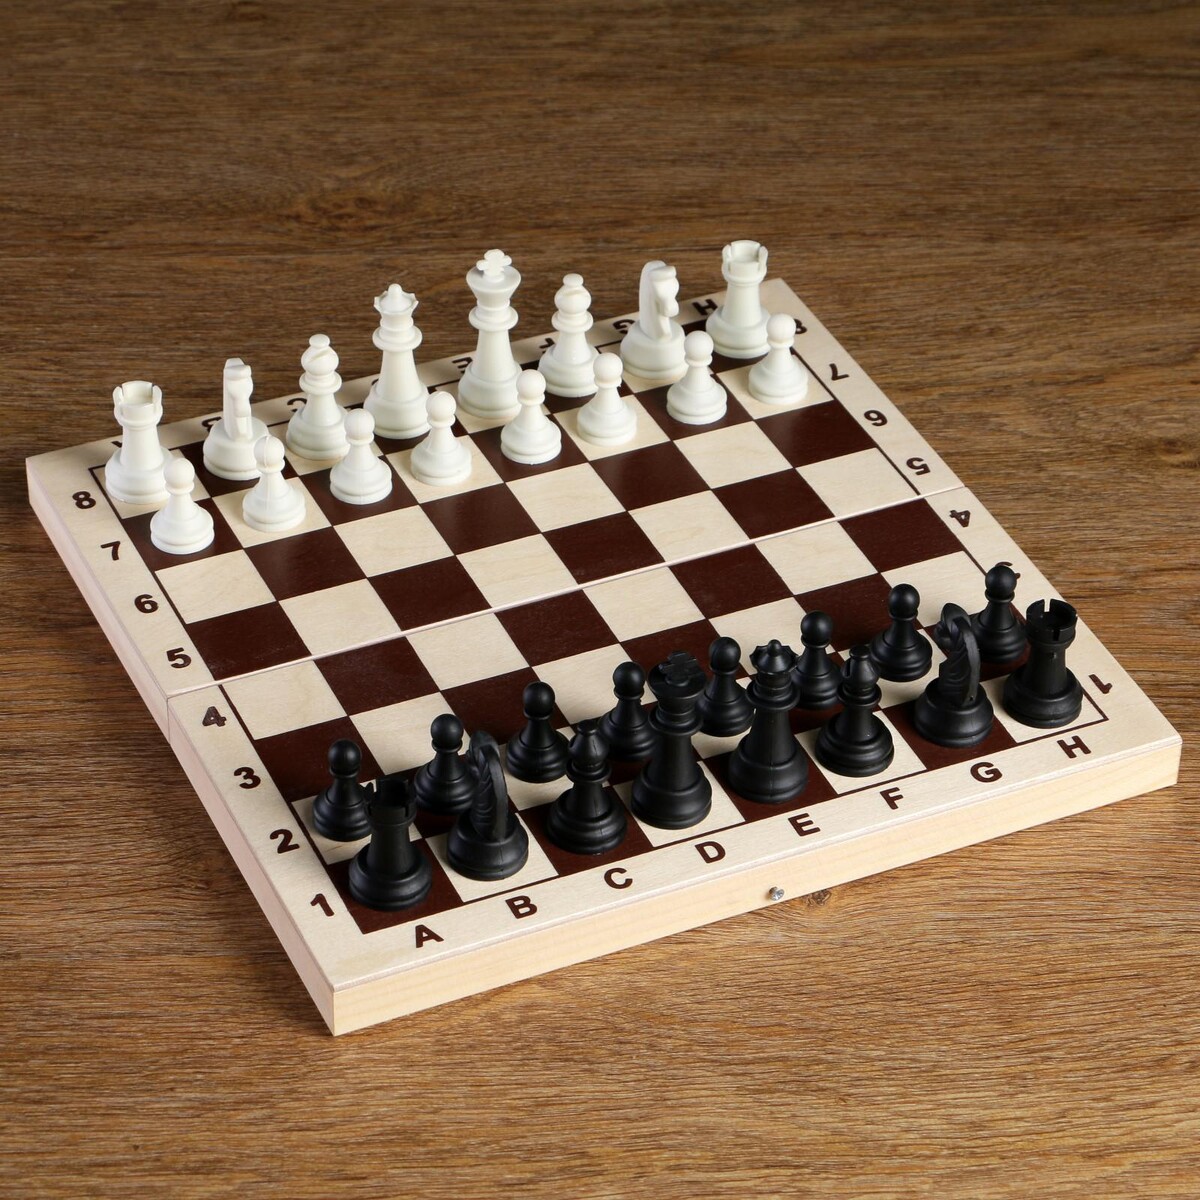 Шахматные фигуры, король h-6.2 см, пешка h-3.2 см, черно-белые имельда и король гоблинов